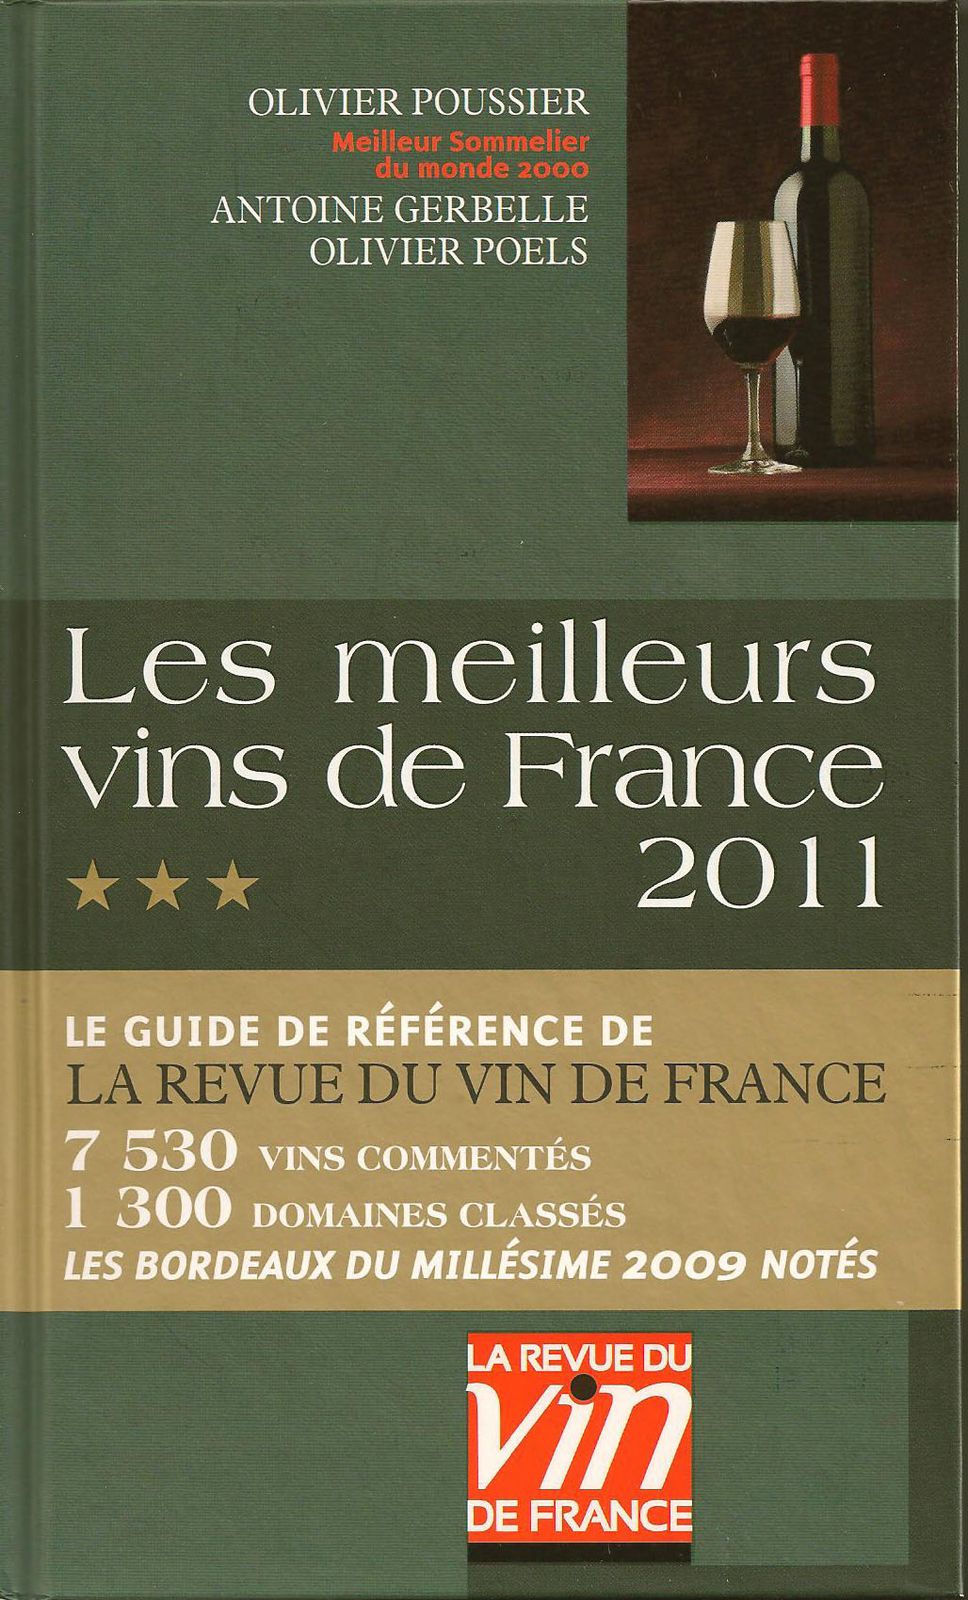 (2) Les meilleurs vins de france 2011